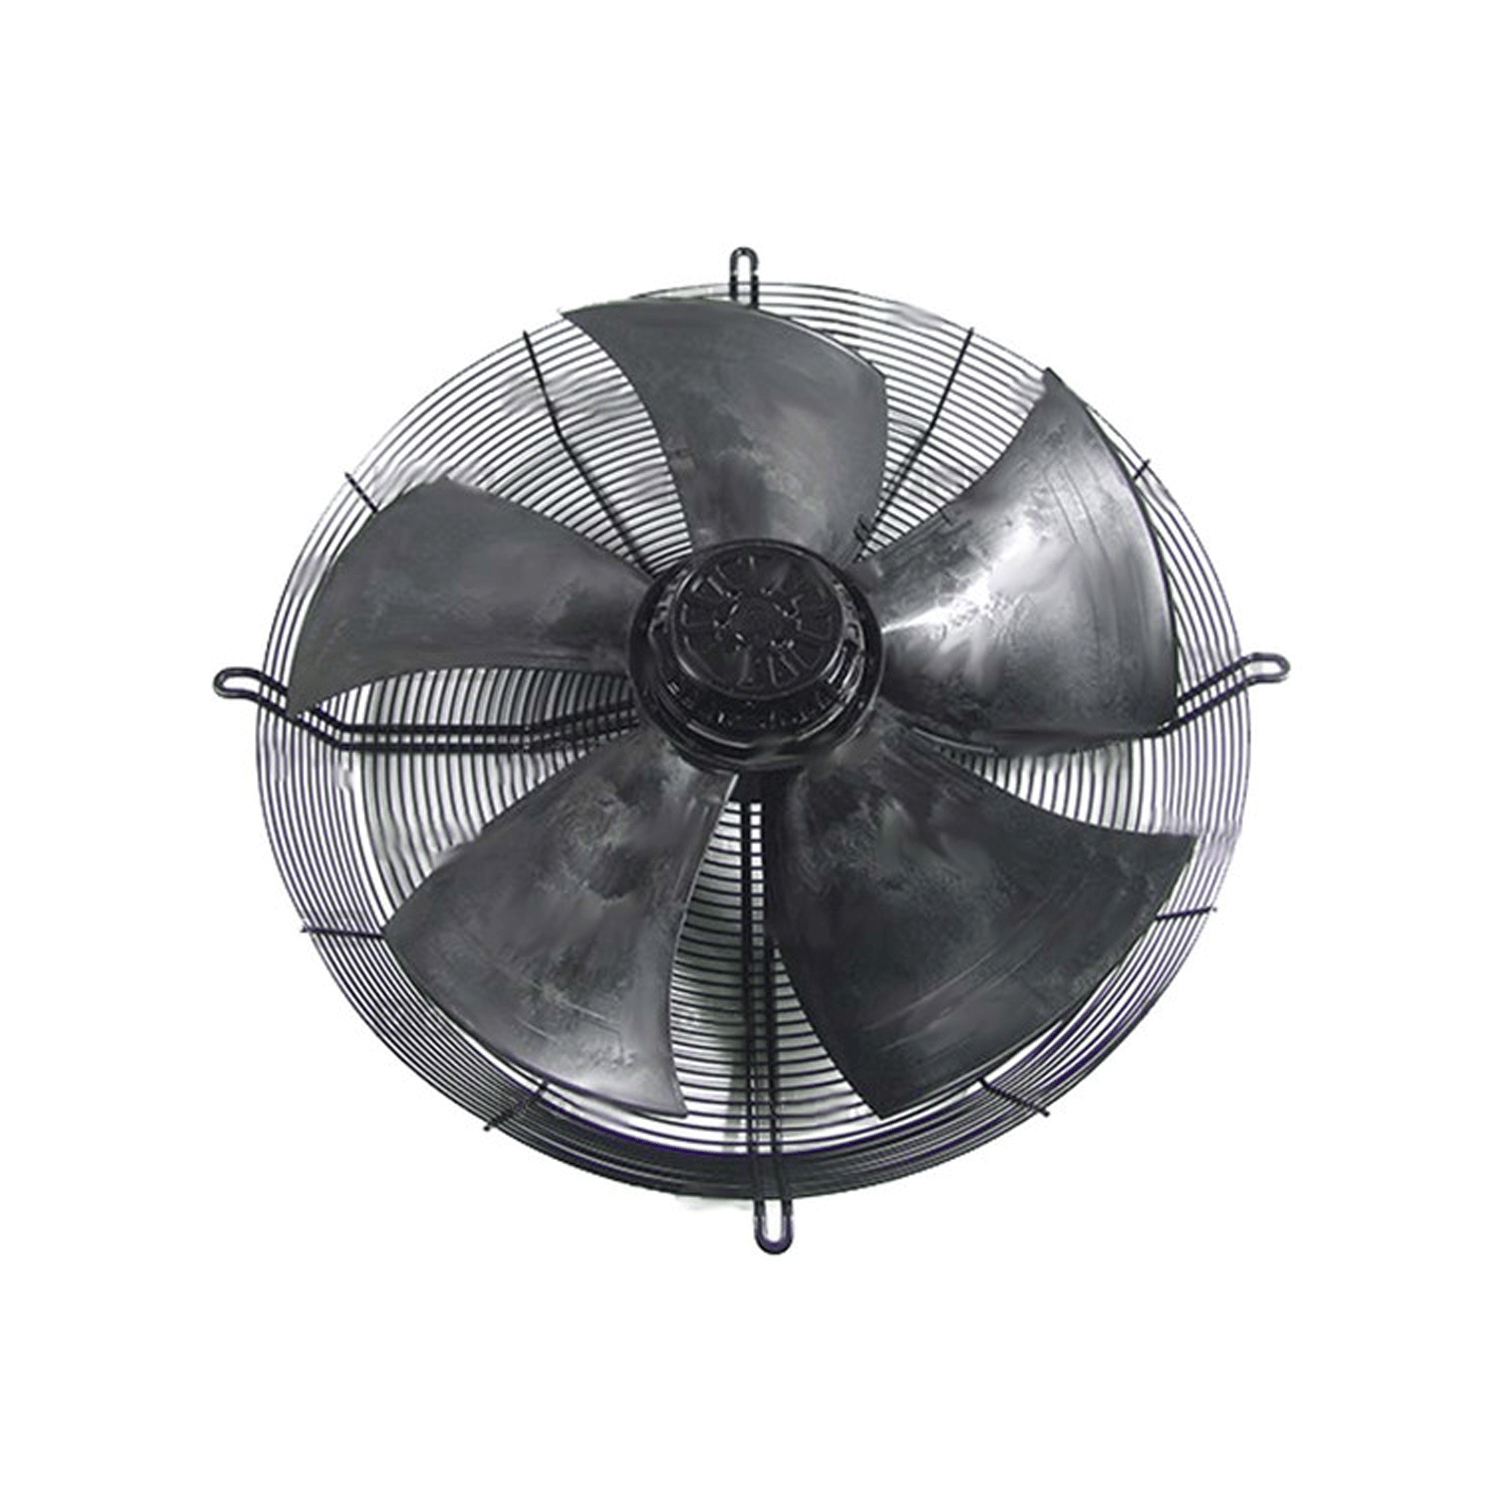 Ventilatore di aspirazione EBM PAPST, d = 710 mm, 3~400V, 50 Hz, 6 poli, S4D710-AF01-01